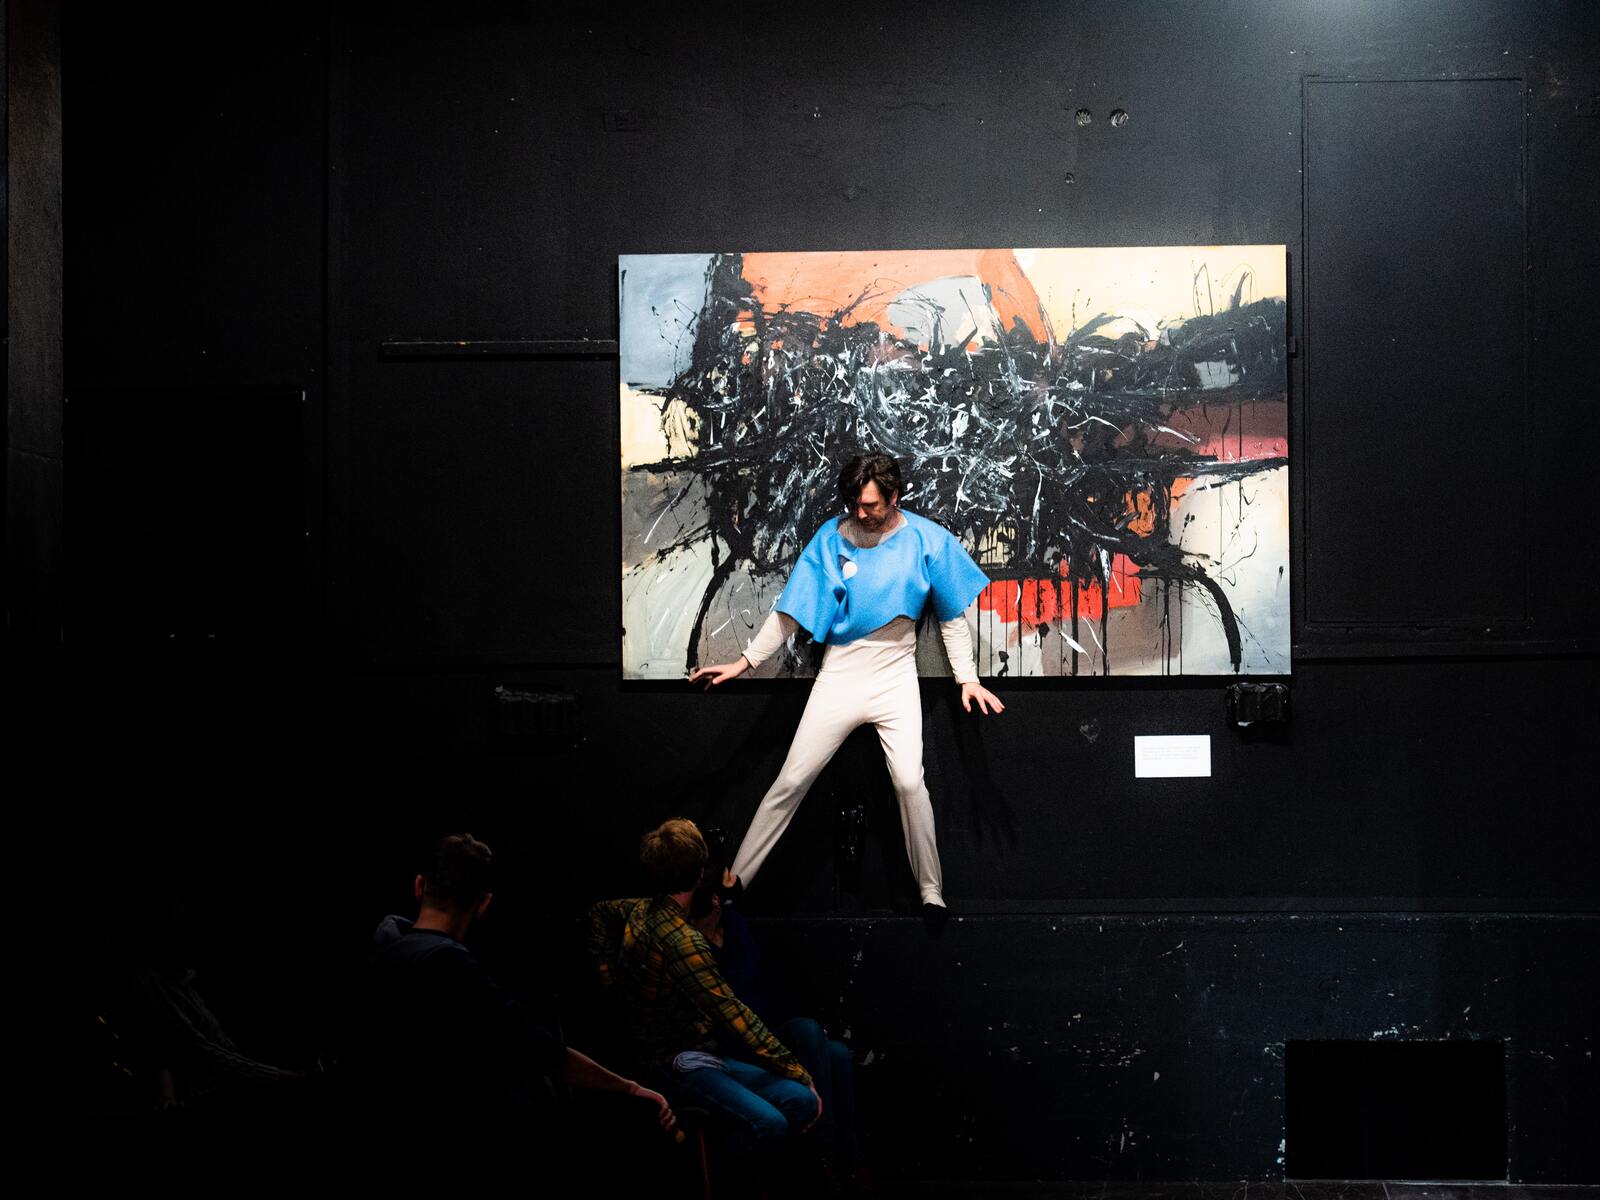 Na występie muru stoi w rozkroku mężczyzna w beżowym trykocie i niebieskiej krótkiej tunice. Za nim abstrakcyjny obraz.